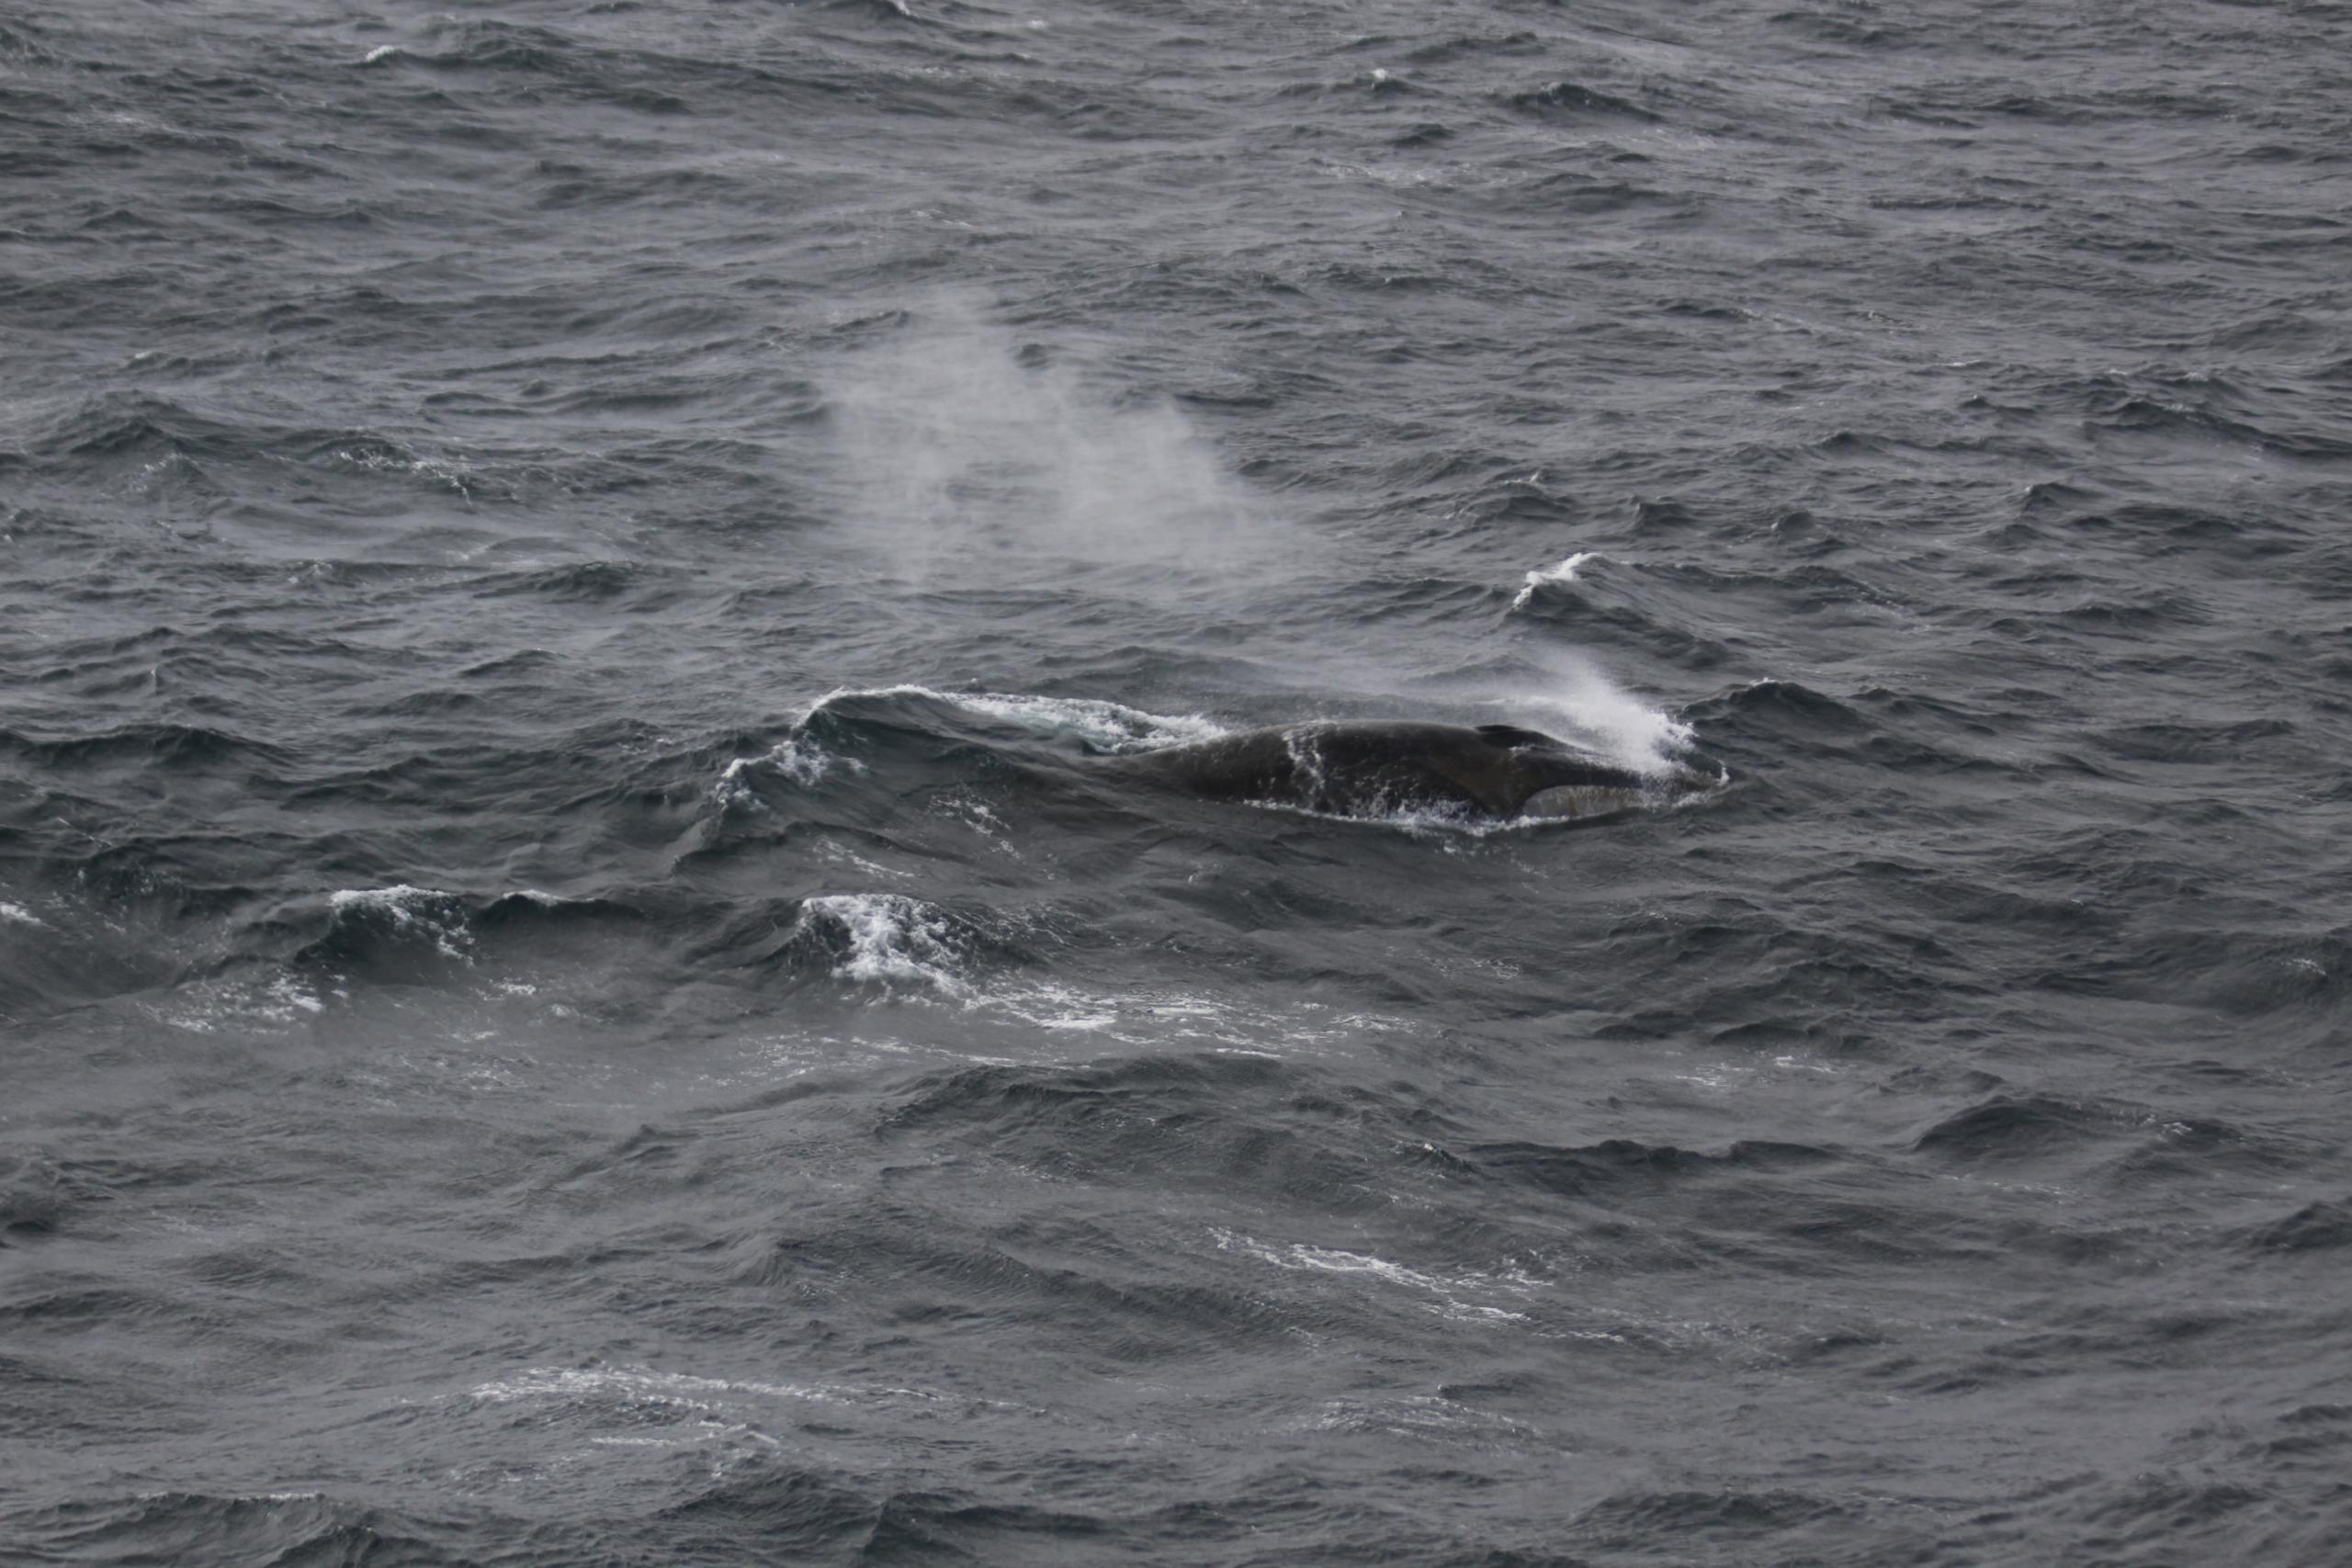 La caza comercial ha reducido las poblaciones de ballenas en un 81%, y eso ha podido tener efectos todavía desconocidos sobre la bomba biológica de carbono, avisa el estudio.. (EFE/Alfred-Wegener-Institut/AWI Ocean Acoustics Group/SOLO USO EDITORIAL)